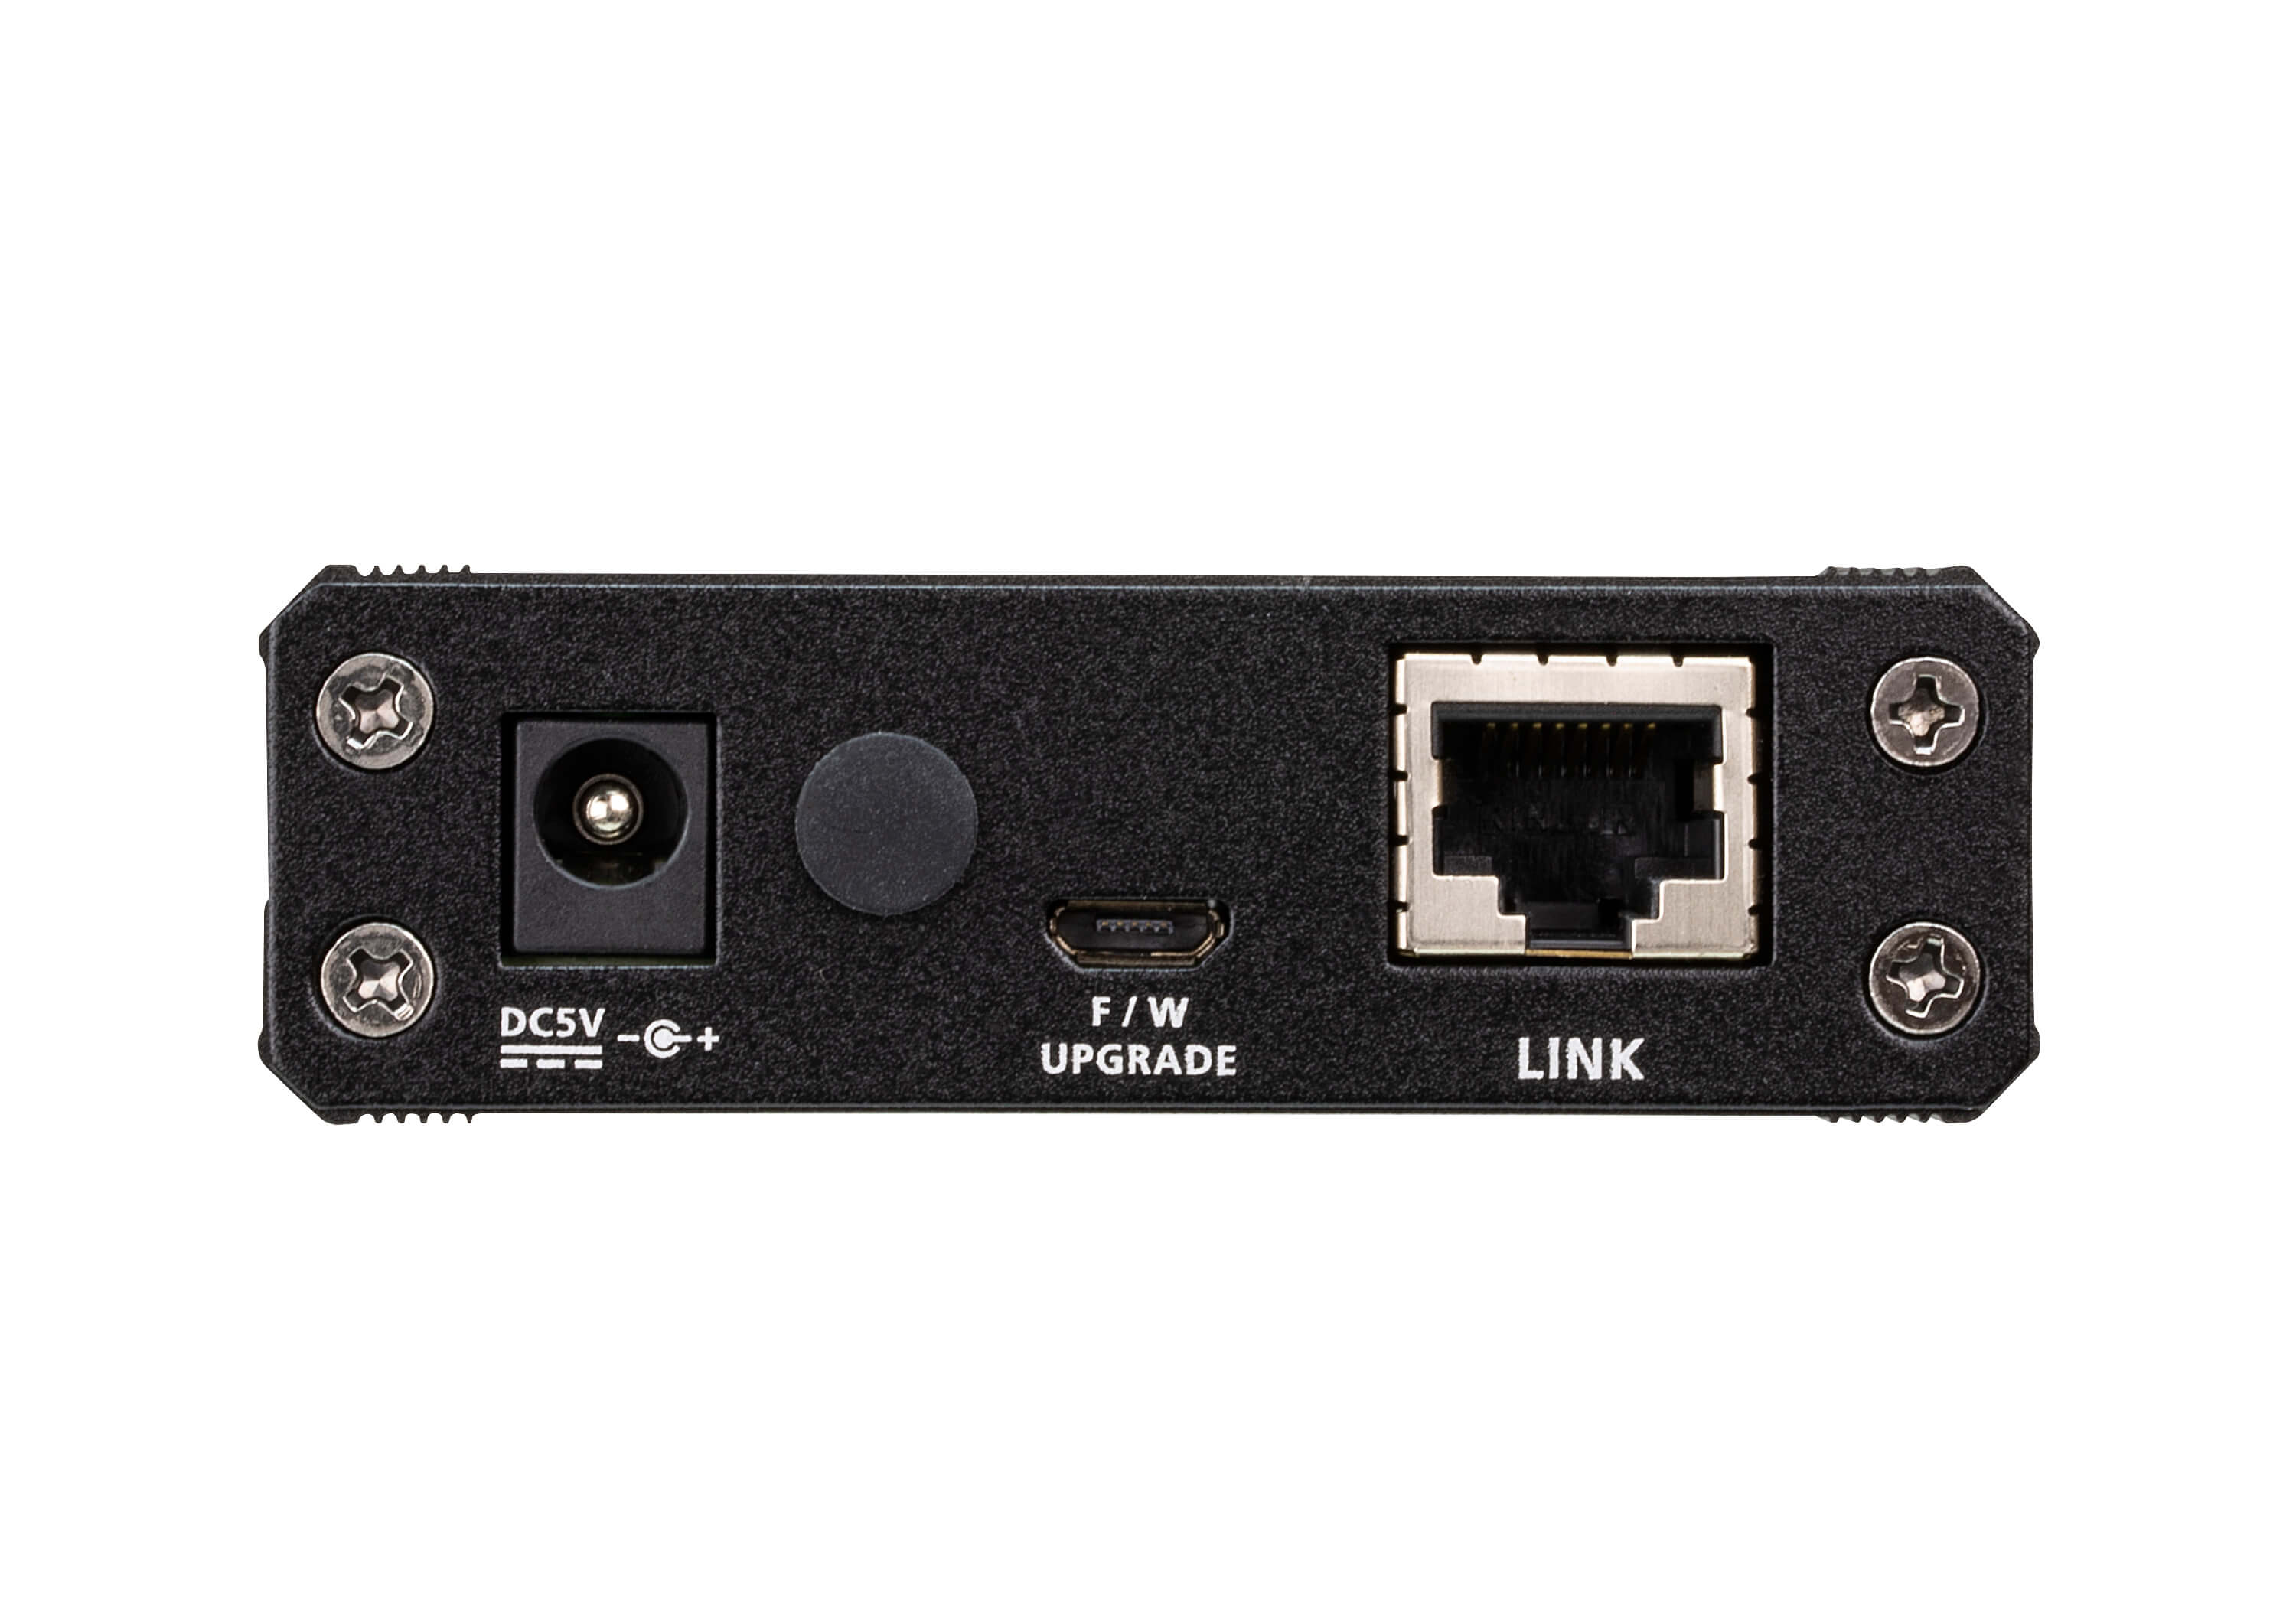 10 M USB 3.2 Gen1 Extender Cable - UE331C, ATEN Extenders